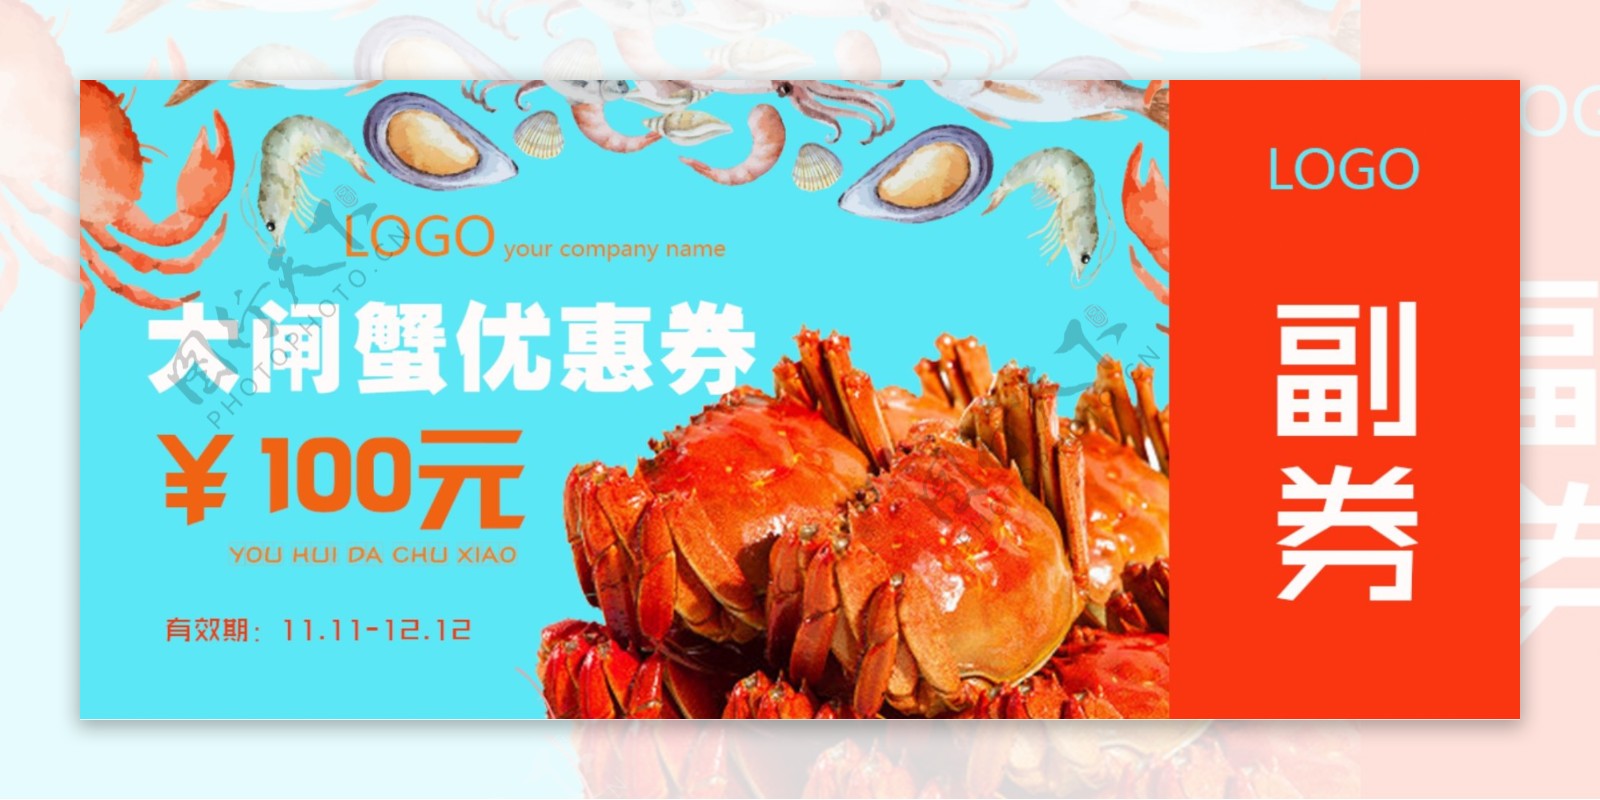 食品海鲜大闸蟹优惠券